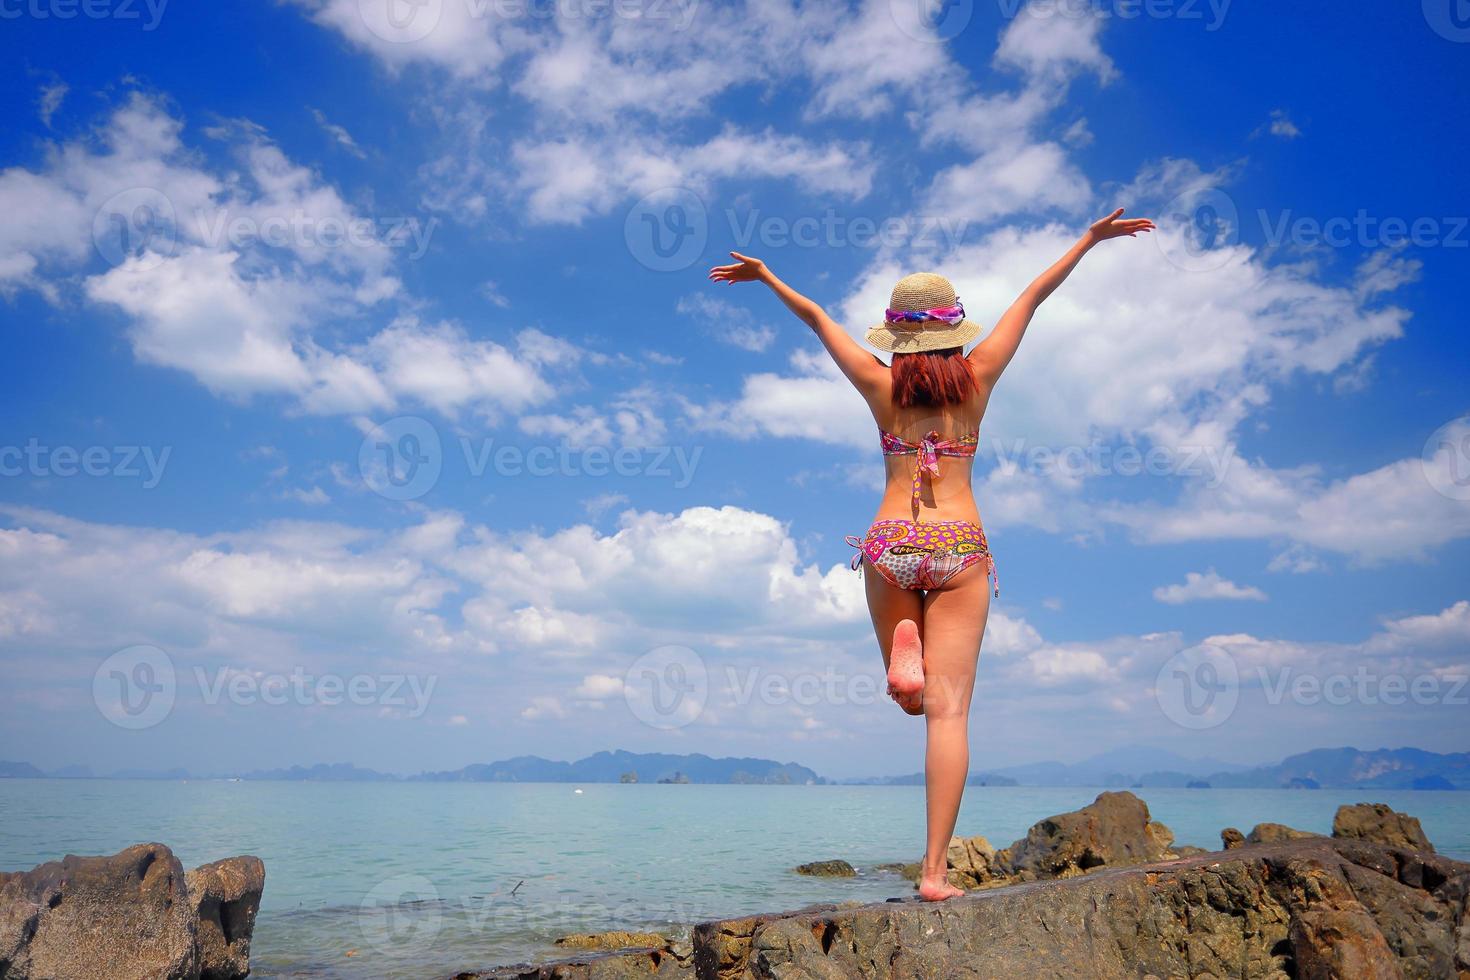 gratis action och avkoppling av bikini solbränd tjej på vit sandstrand i krabi, thailand. konceptbild för sommarsemester i tropiskt land. foto